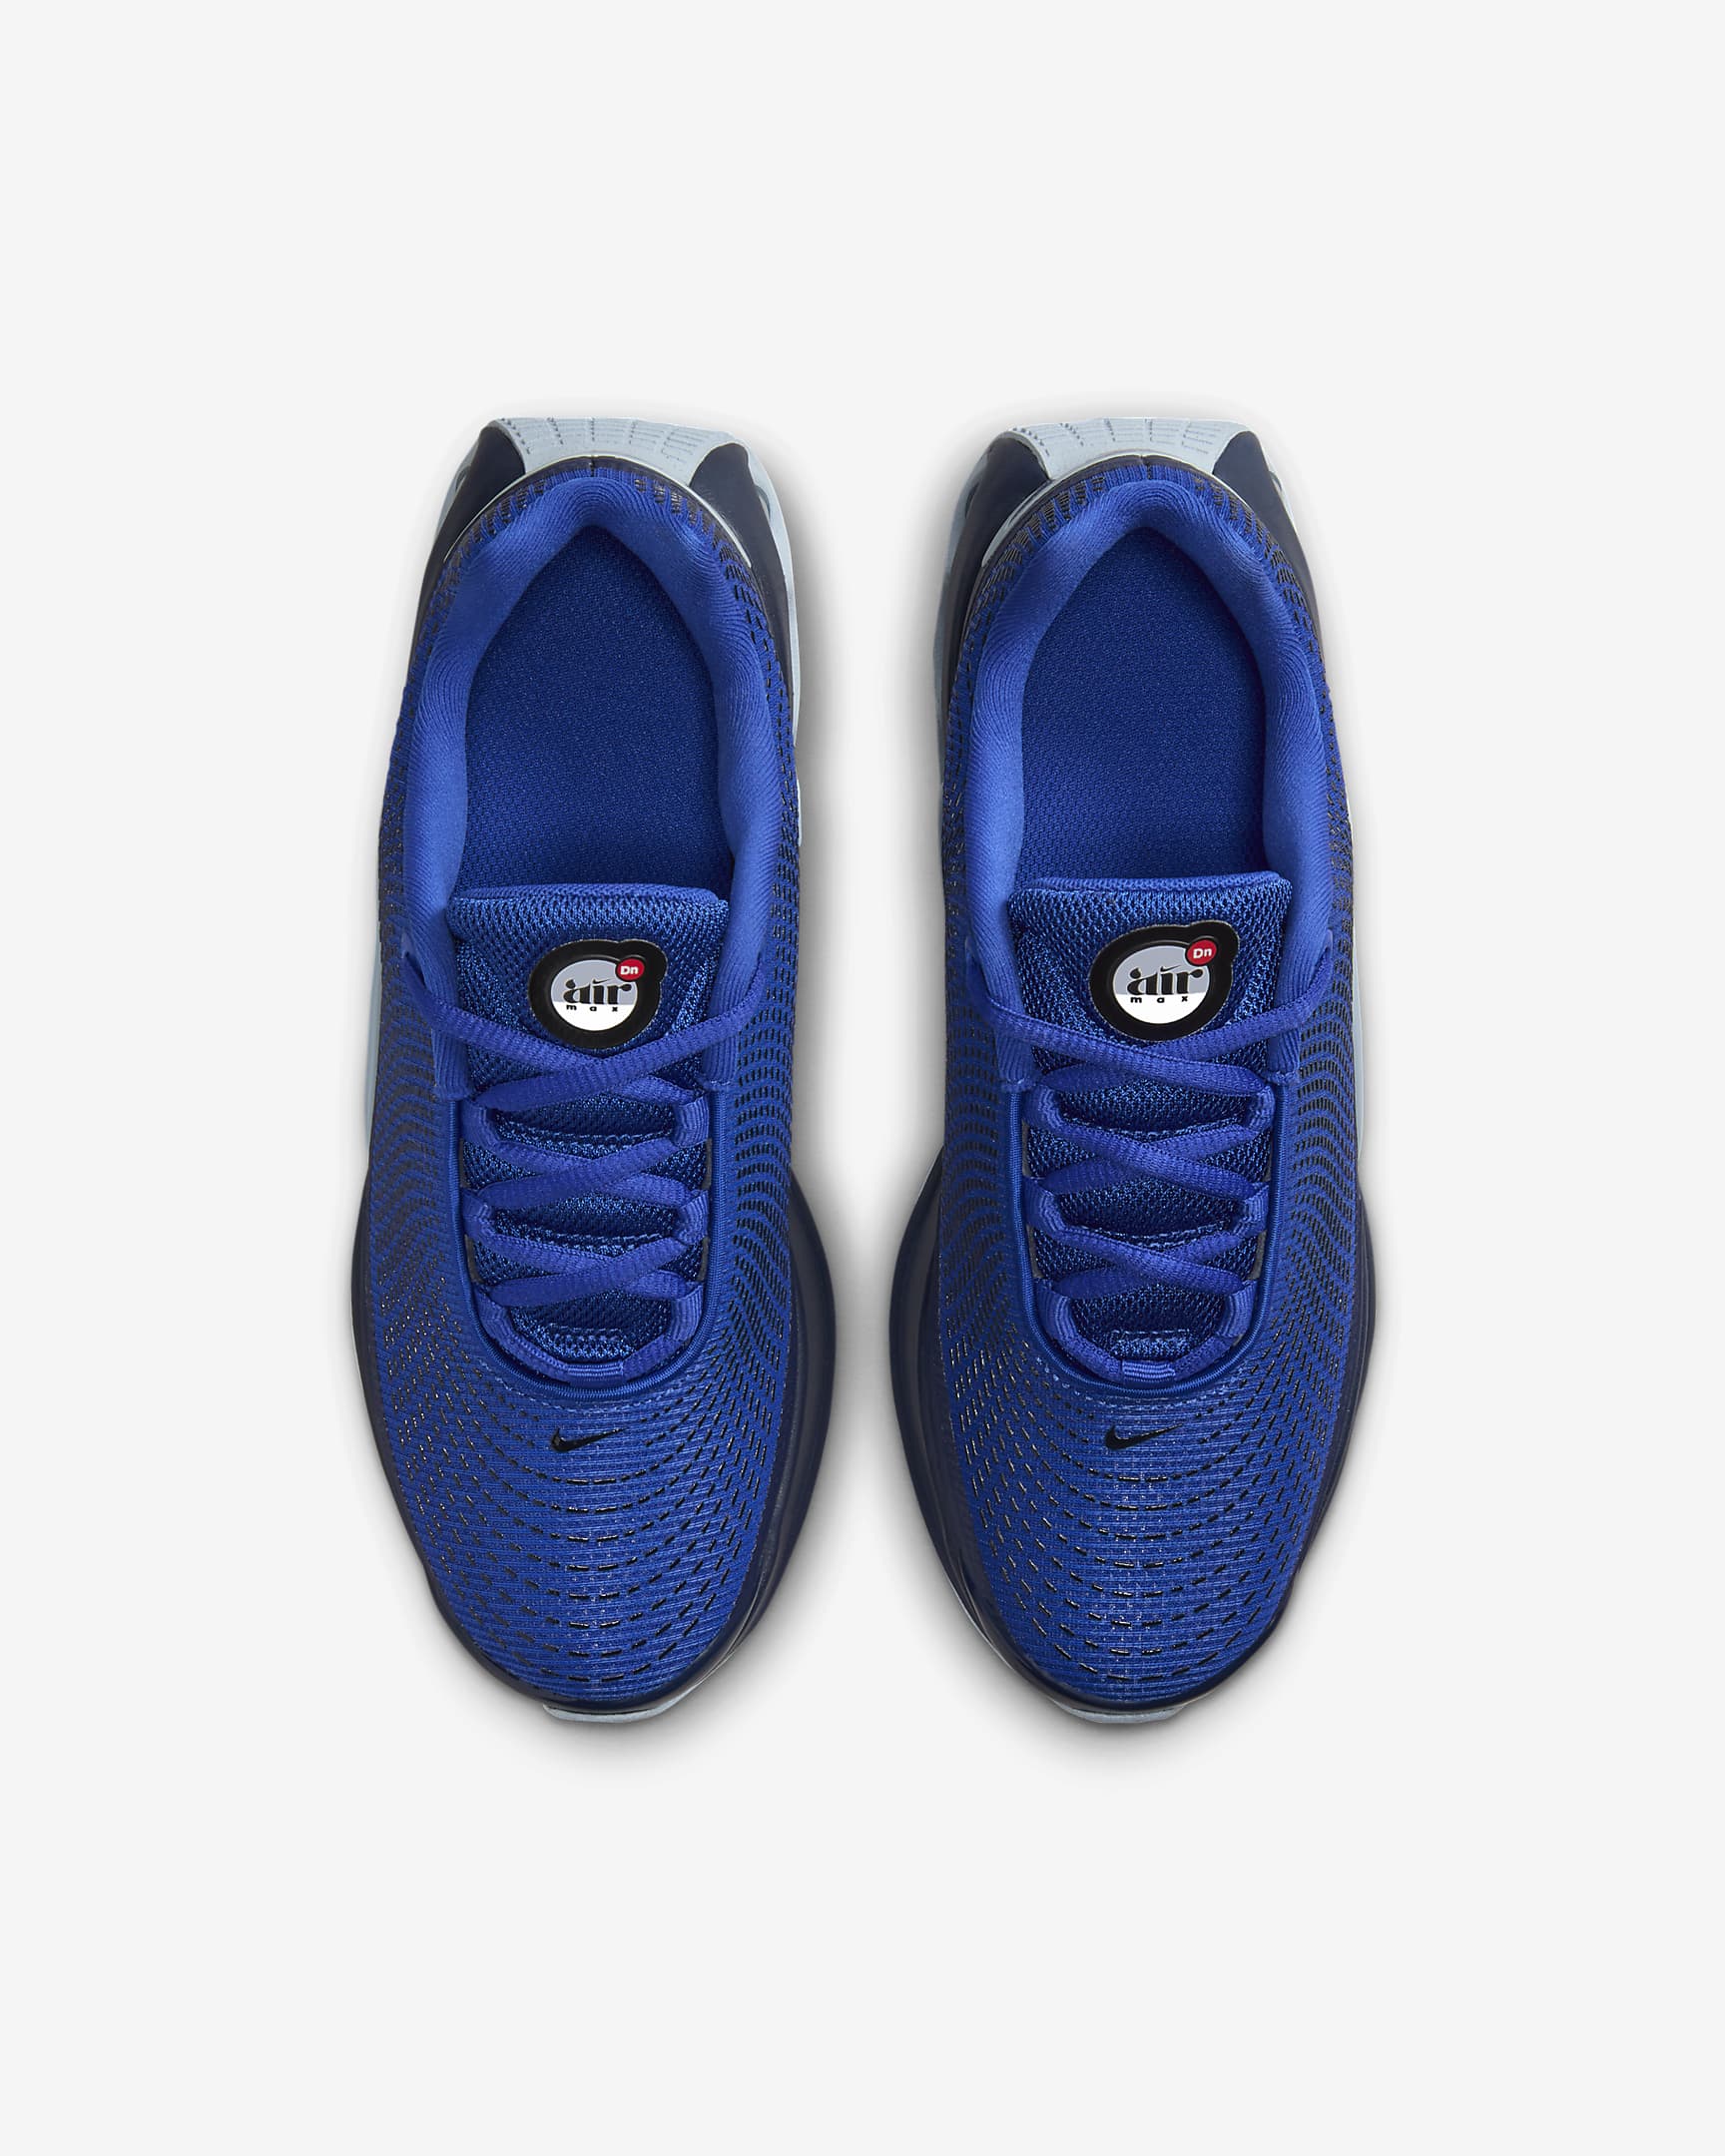 Sapatilhas Nike Air Max DN Júnior - Azul Hyper/Midnight Navy/Azul Armony claro/Branco